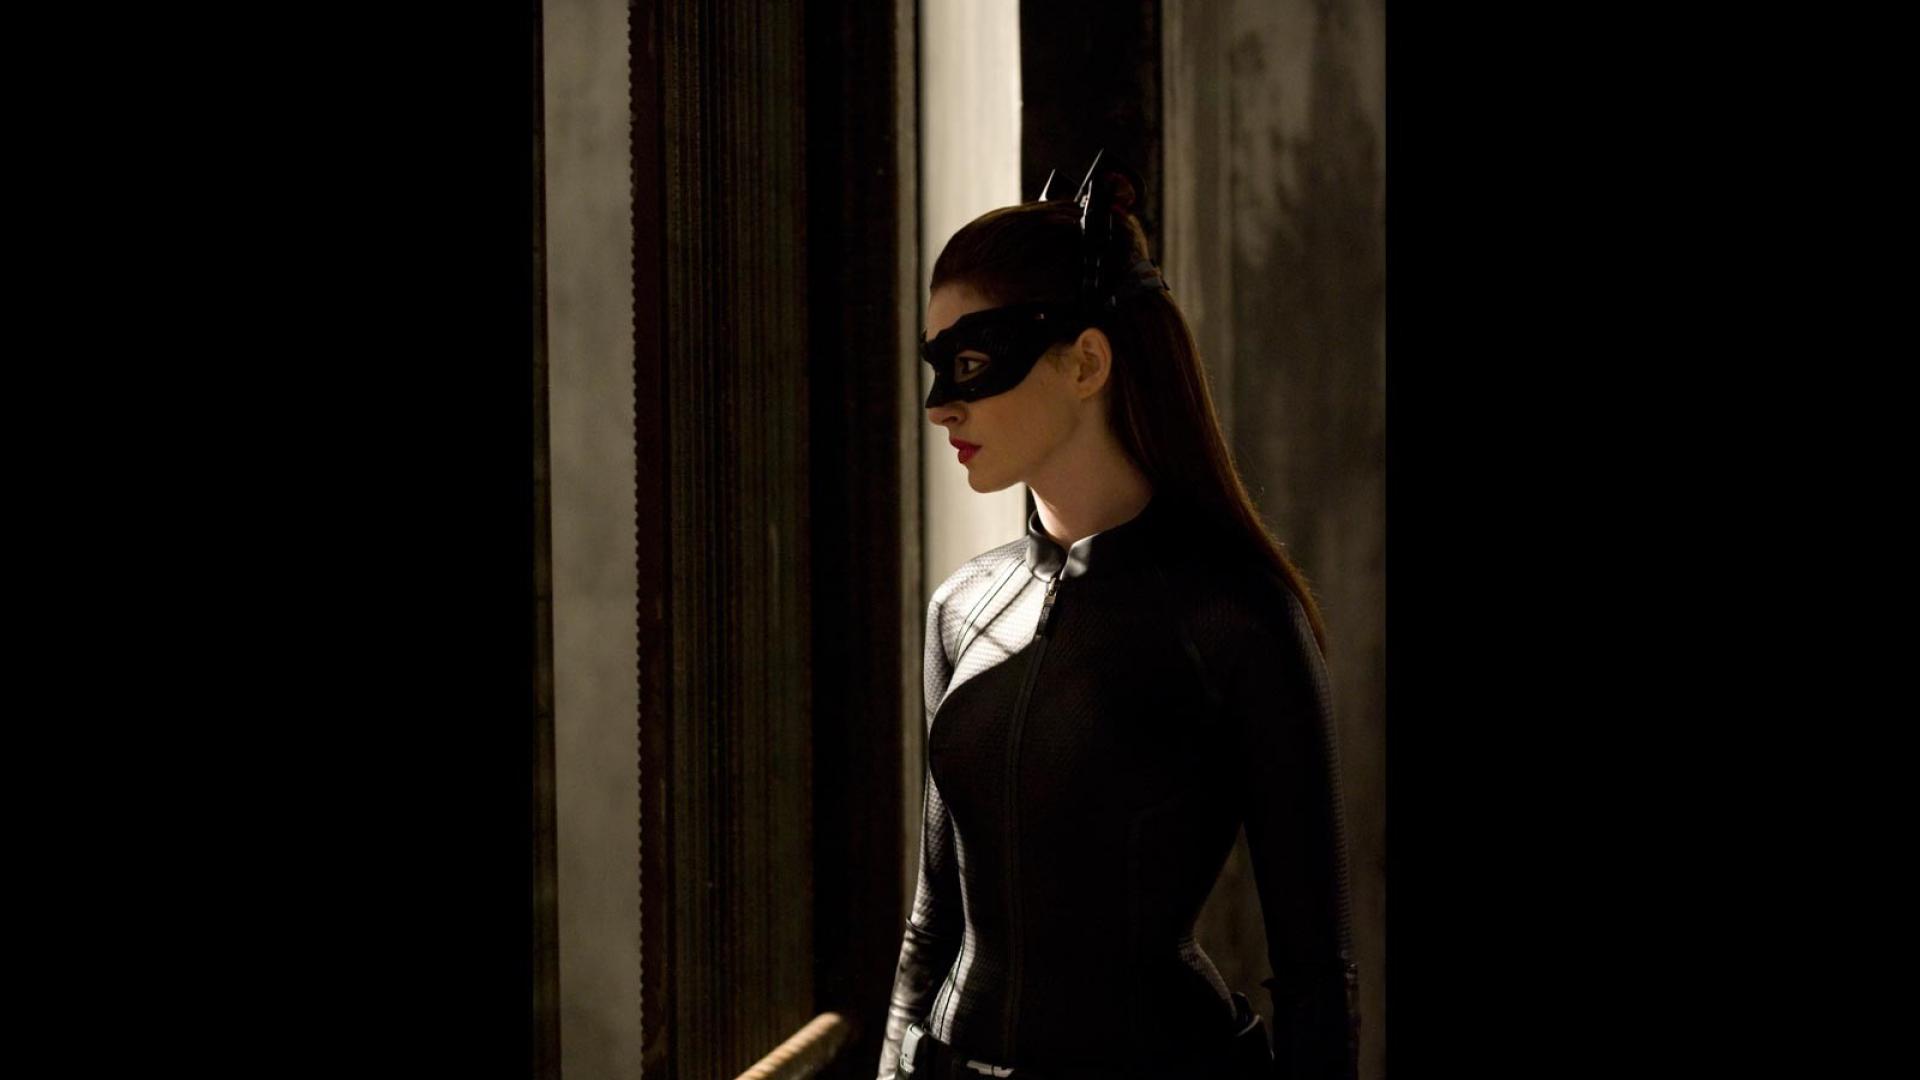 Anne hathaway catwoman batman the dark knight rises wallpaper HD 1920x1080.